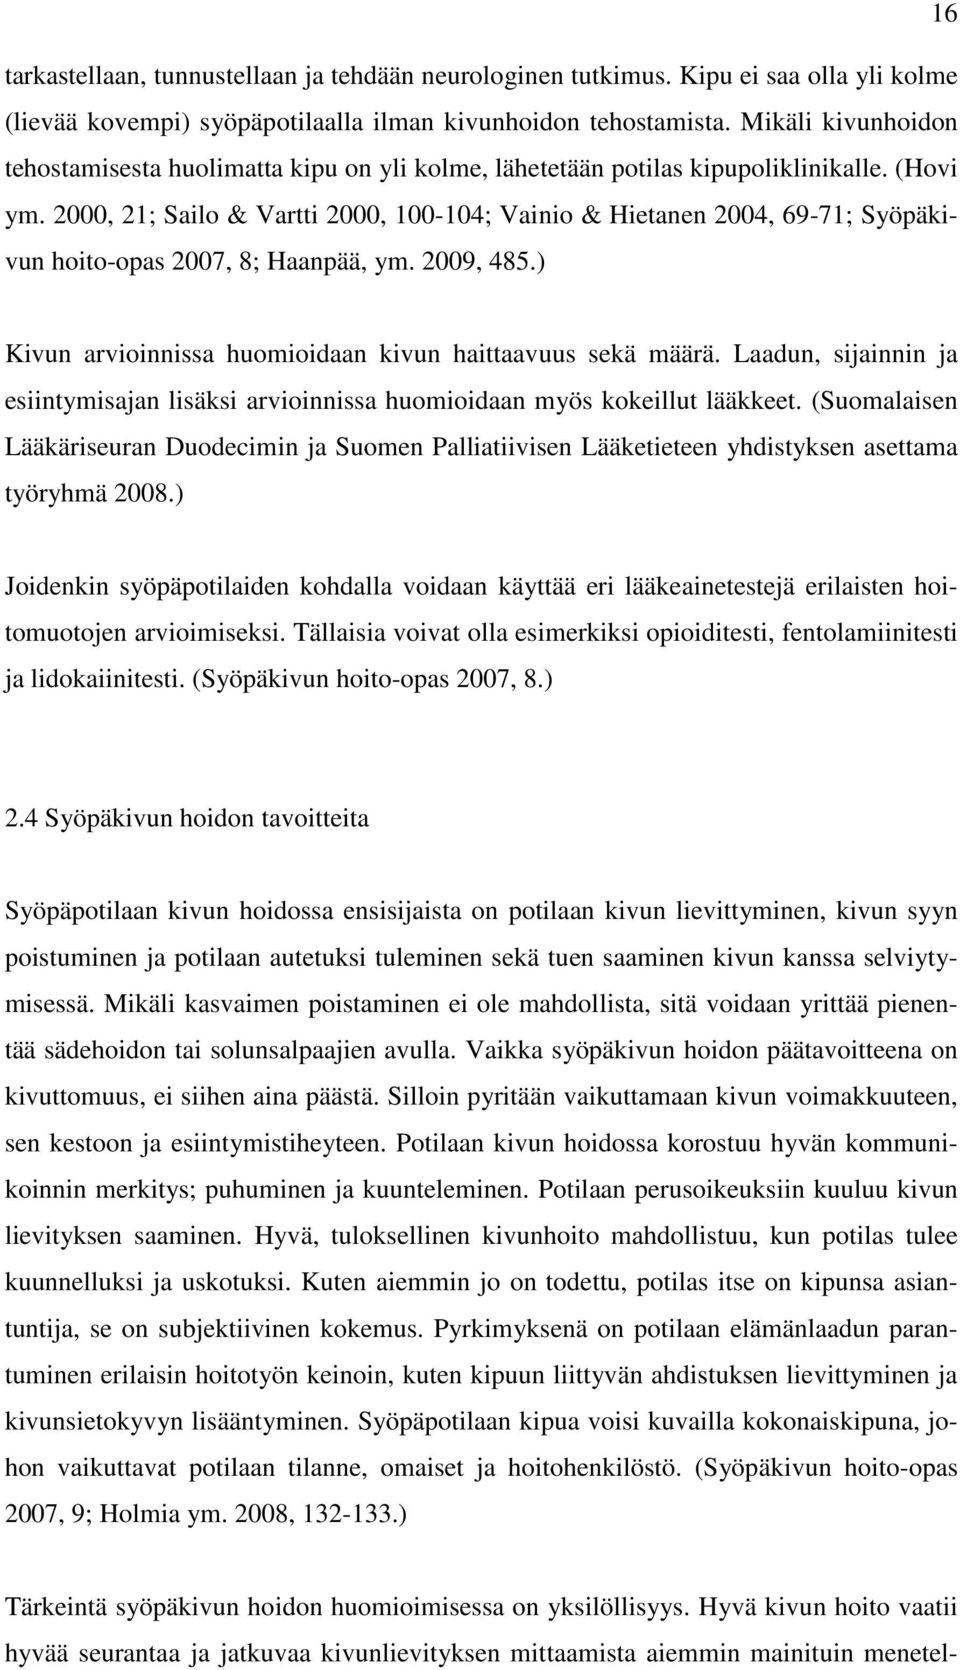 2000, 21; Sailo & Vartti 2000, 100-104; Vainio & Hietanen 2004, 69-71; Syöpäkivun hoito-opas 2007, 8; Haanpää, ym. 2009, 485.) Kivun arvioinnissa huomioidaan kivun haittaavuus sekä määrä.